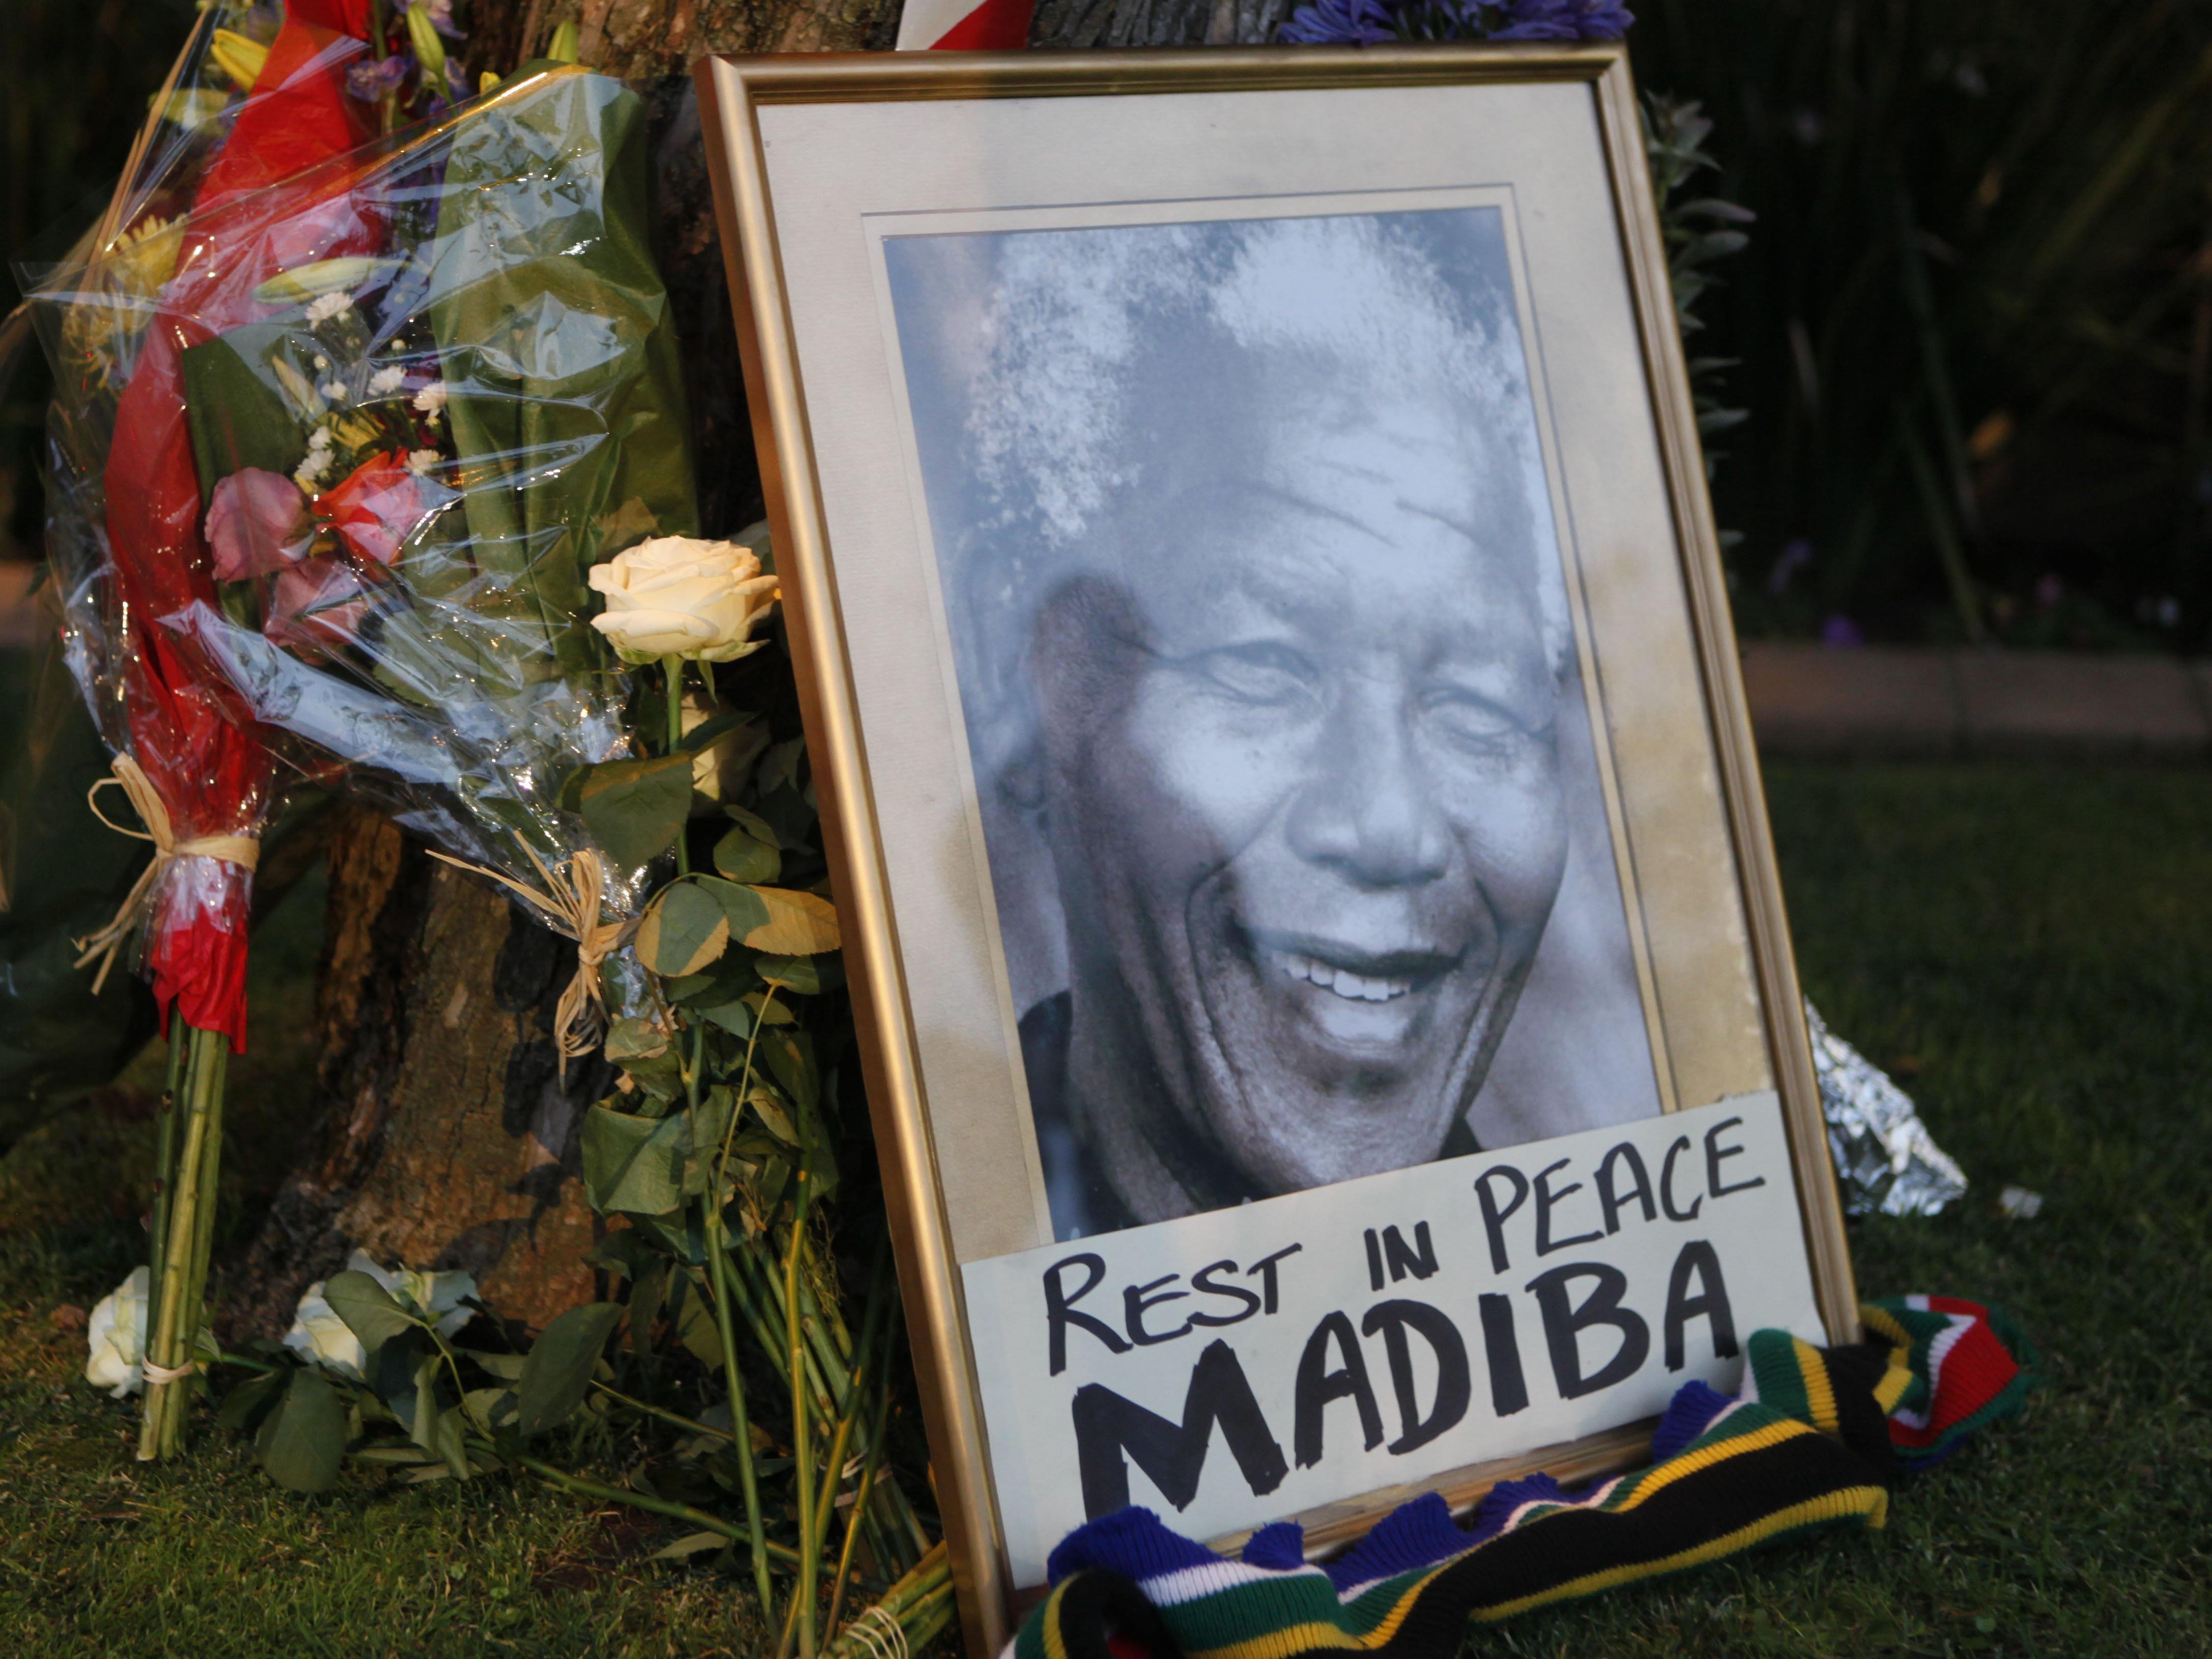 Mandela-Tod in Österreich betrauert - Wien offen für Straßenwidmung